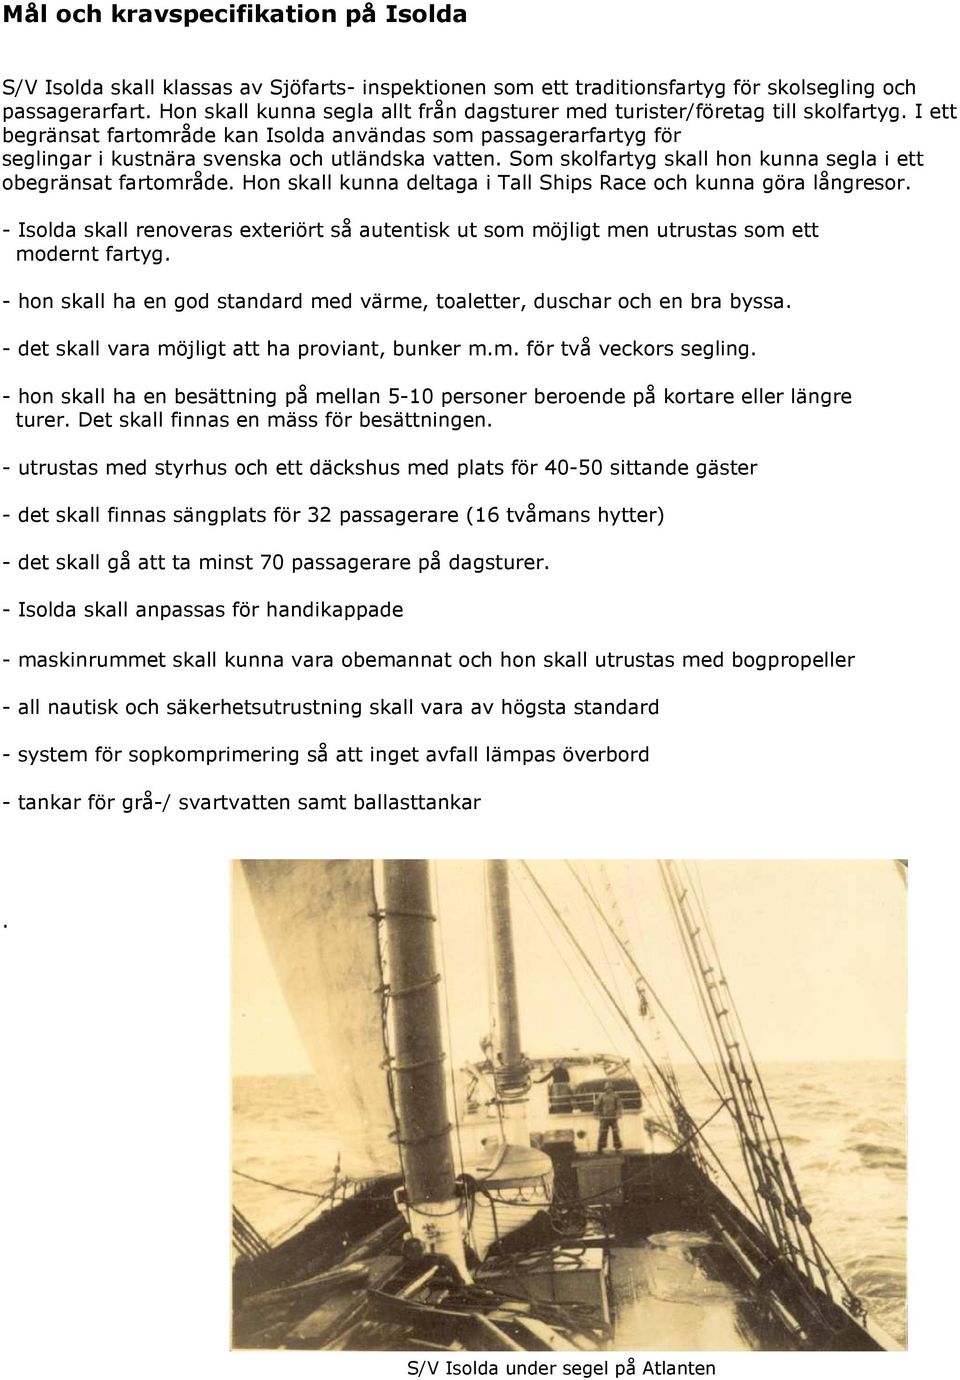 I ett begränsat fartområde kan Isolda användas som passagerarfartyg för seglingar i kustnära svenska och utländska vatten. Som skolfartyg skall hon kunna segla i ett obegränsat fartområde.